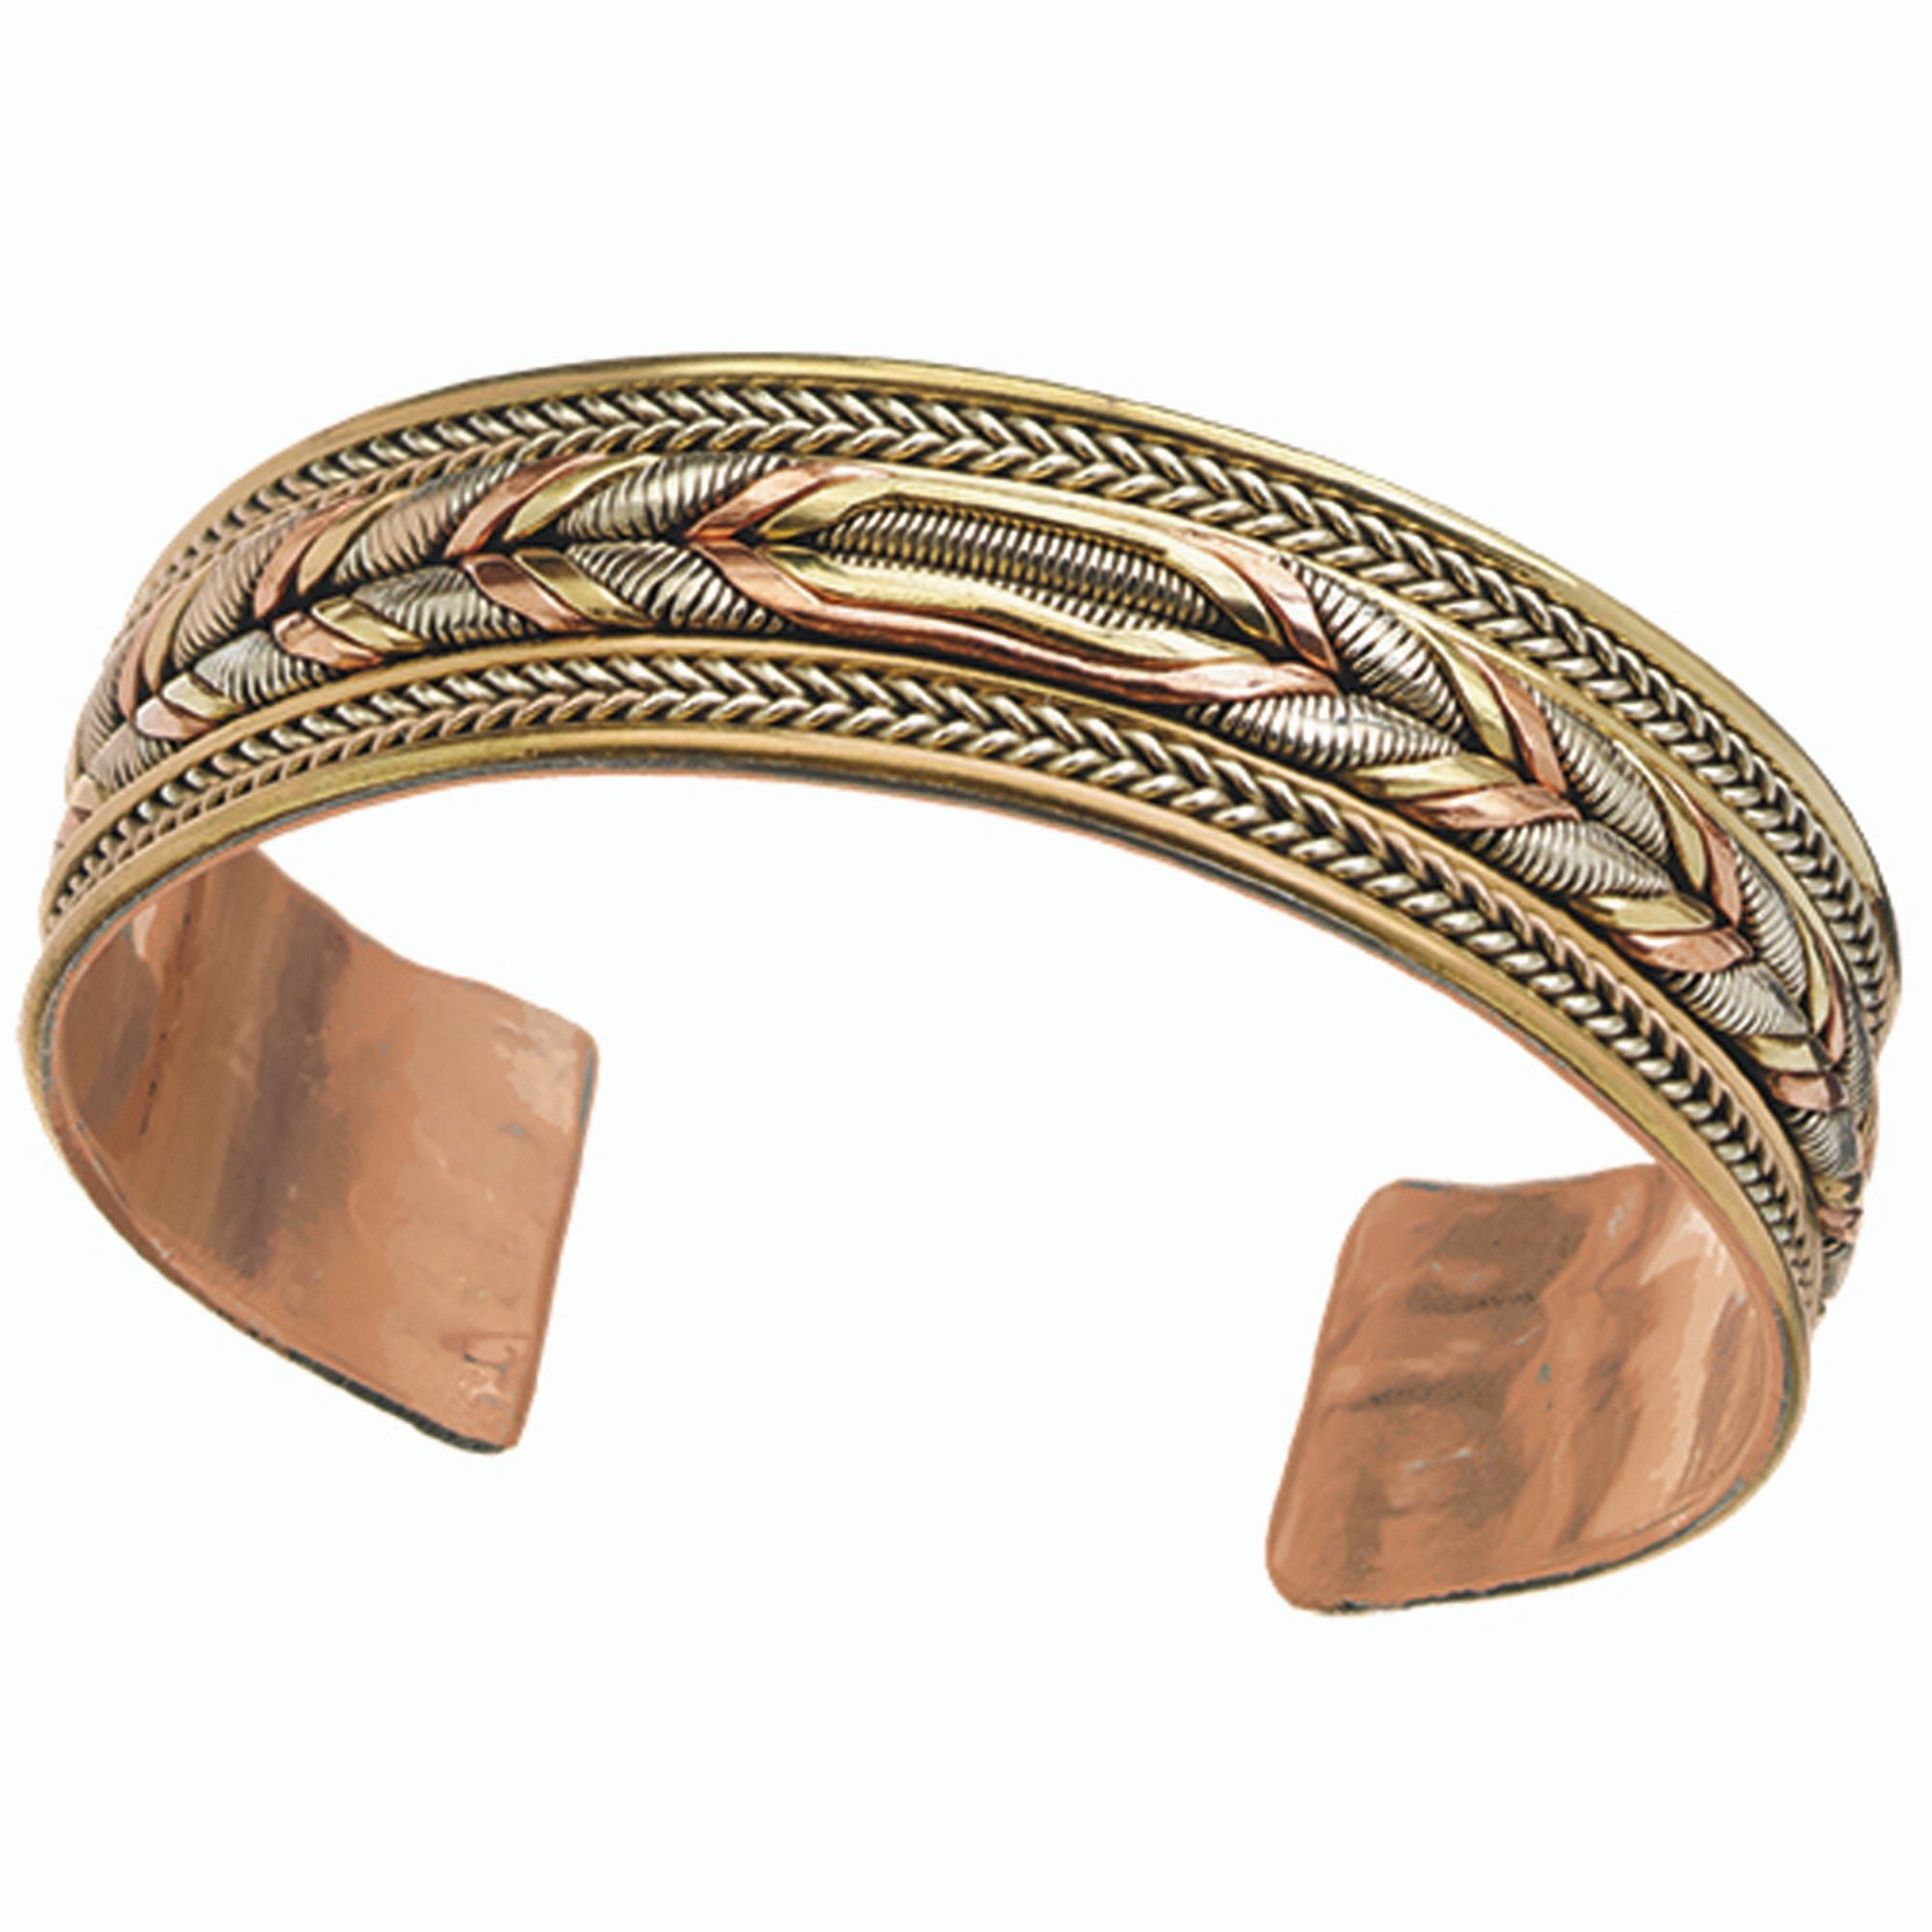 Copper and Brass Cuff Bracelet: Healing Braid - Global Crafts